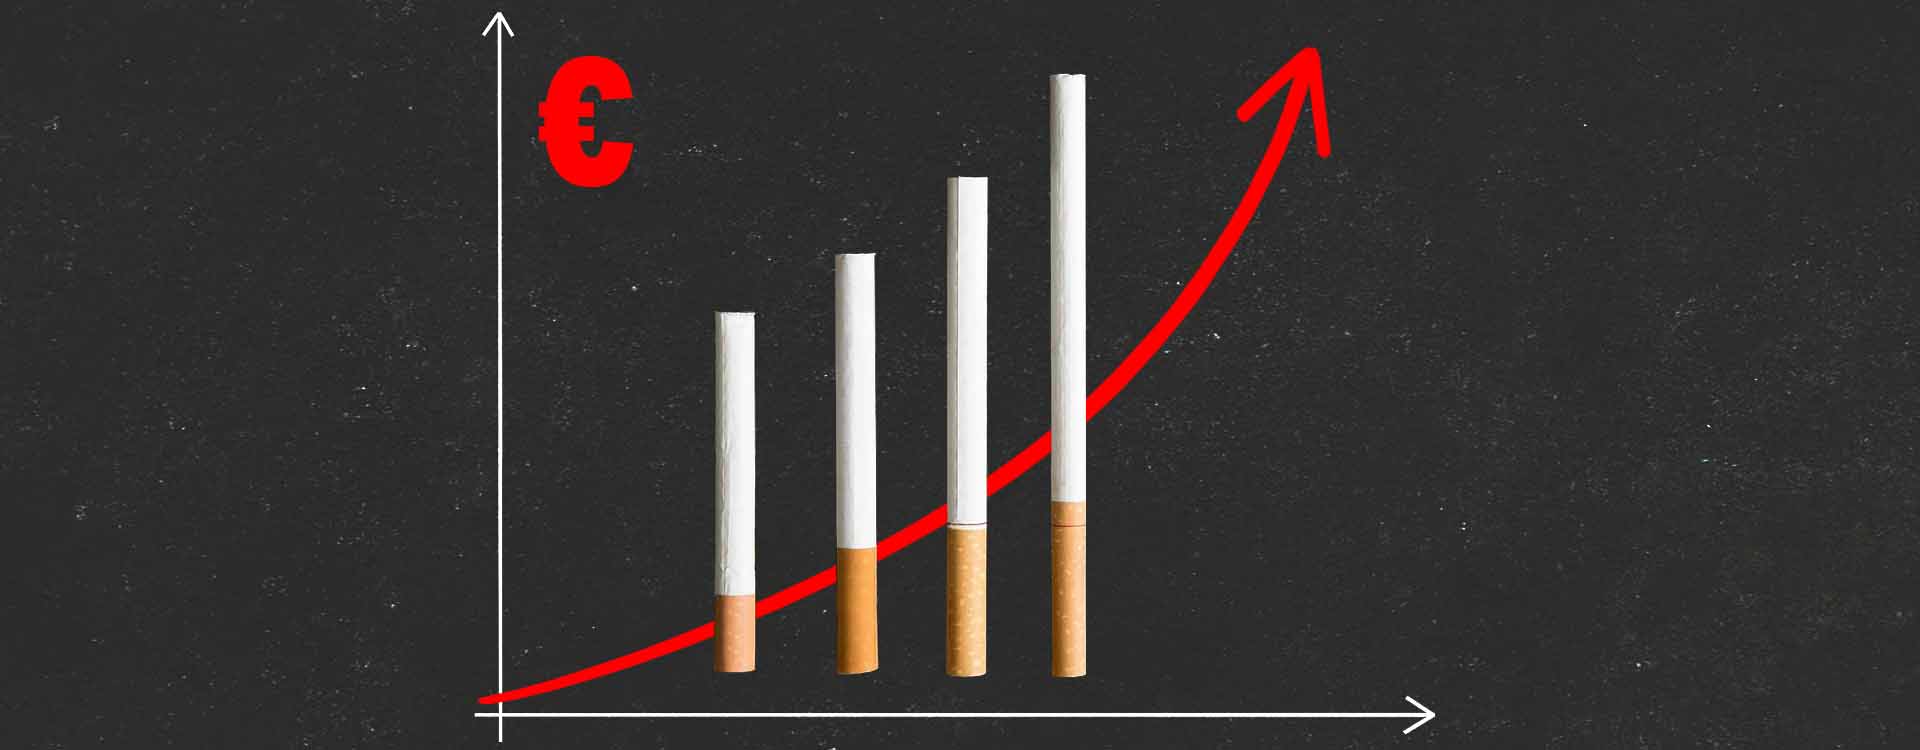 Ilustračný obrázok - graf: stúpajúca cena cigariet